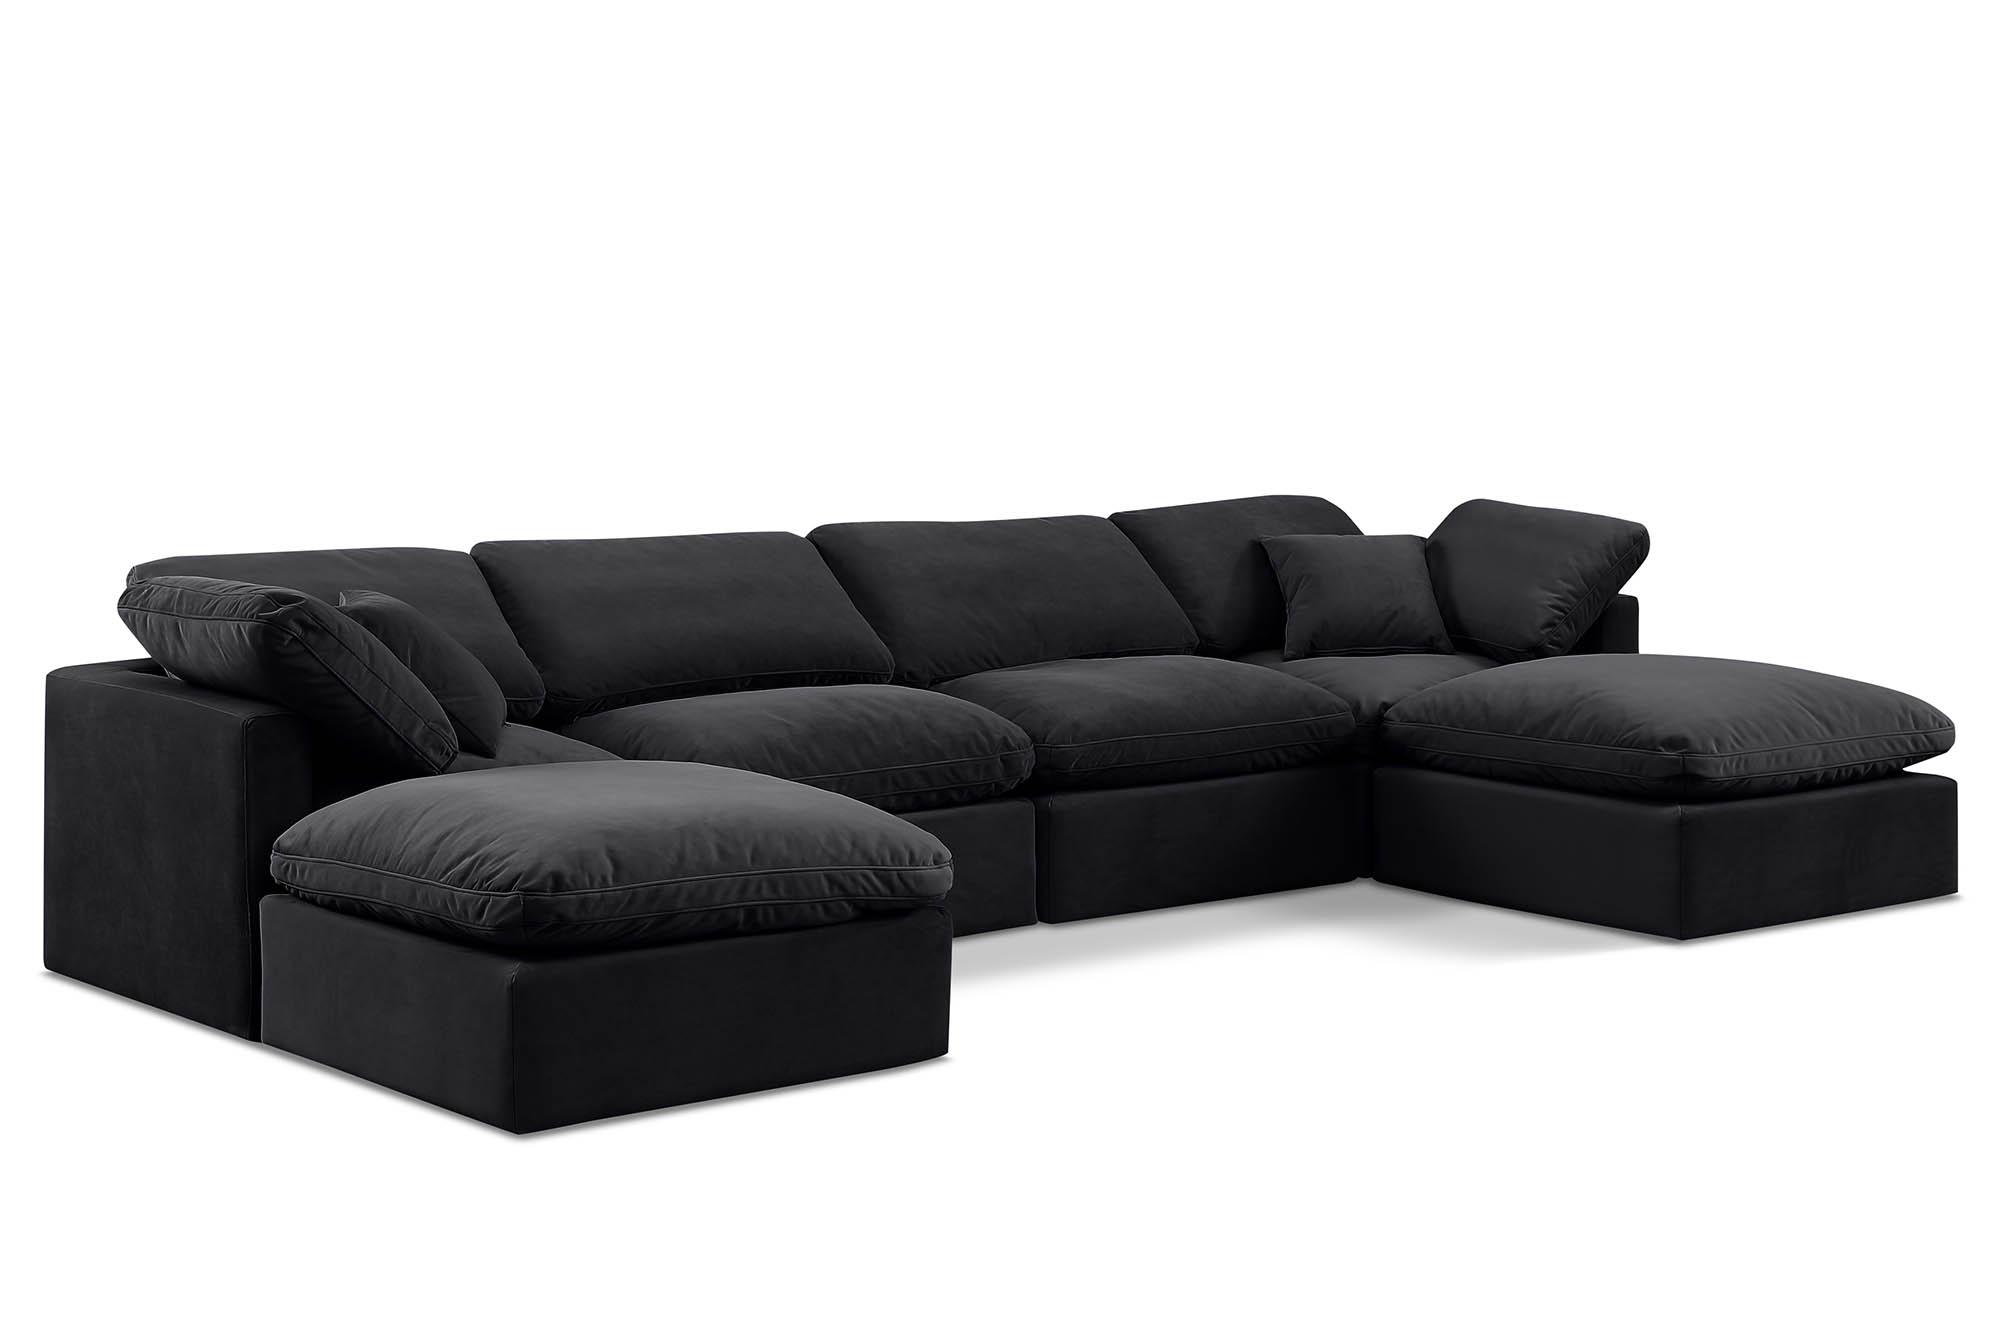 Contemporary, Modern Modular Sectional Sofa INDULGE 147Black-Sec6B 147Black-Sec6B in Black Velvet